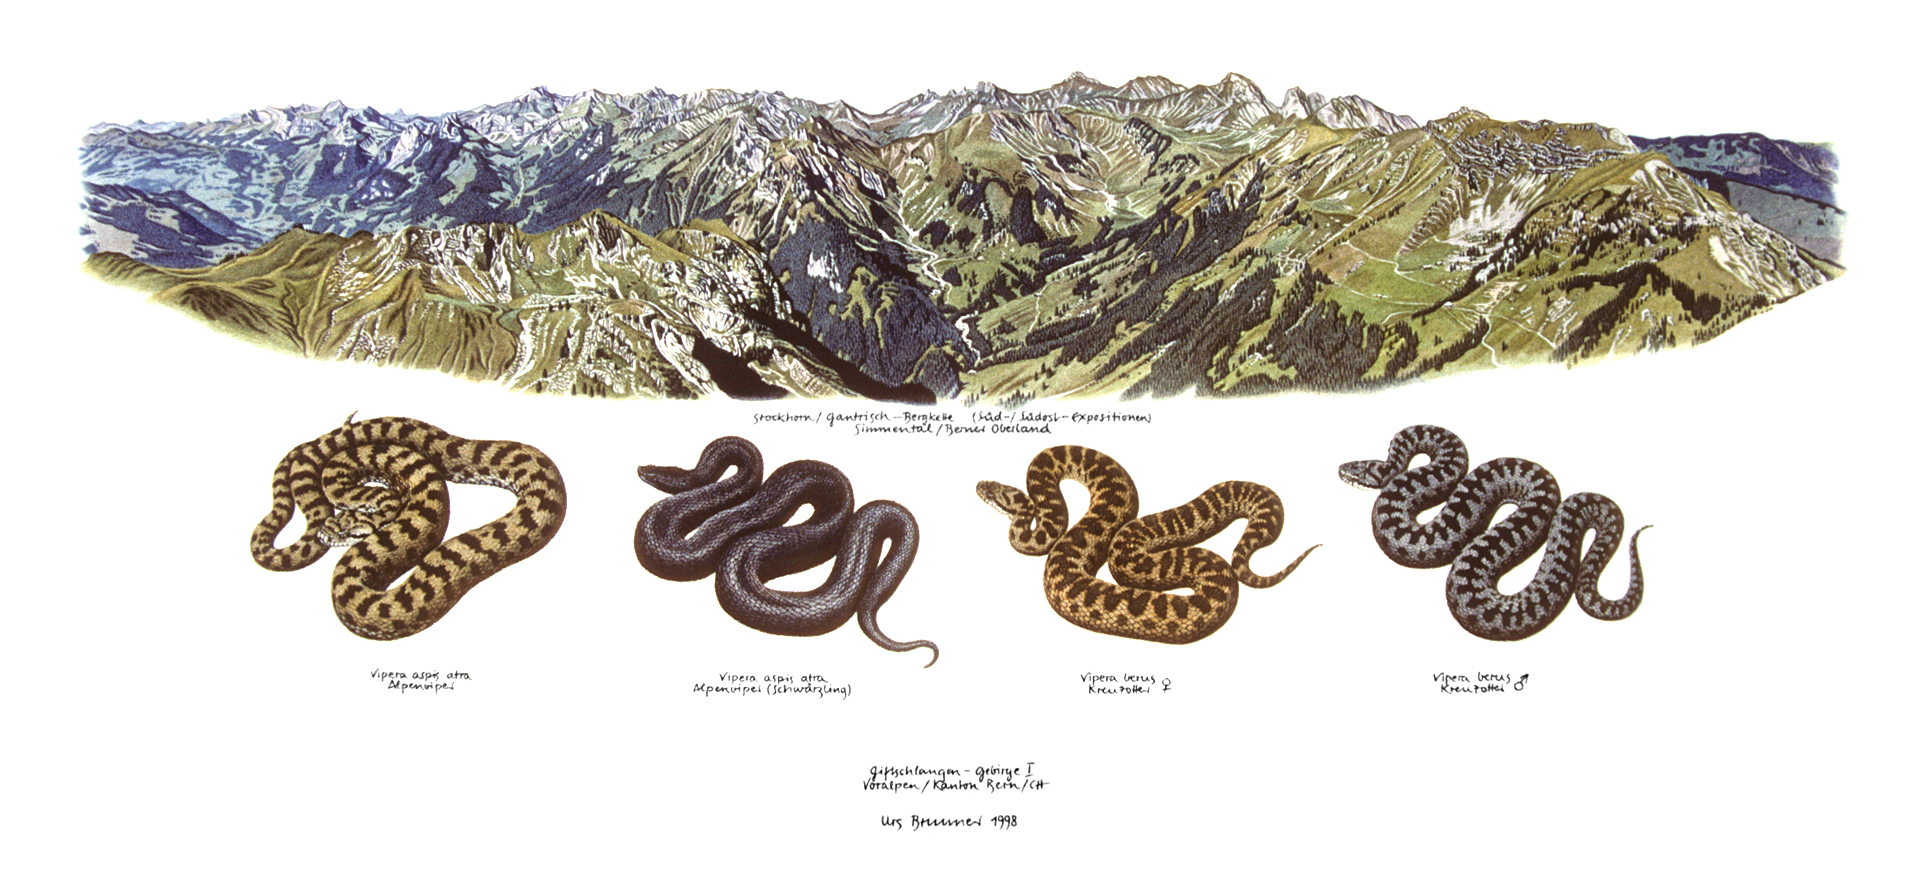 Giftschlangen-Gebirge I / Stockhornkette (CH) / Vipern, 1998, Aquarell auf Papier, 35 x 59,5 cm